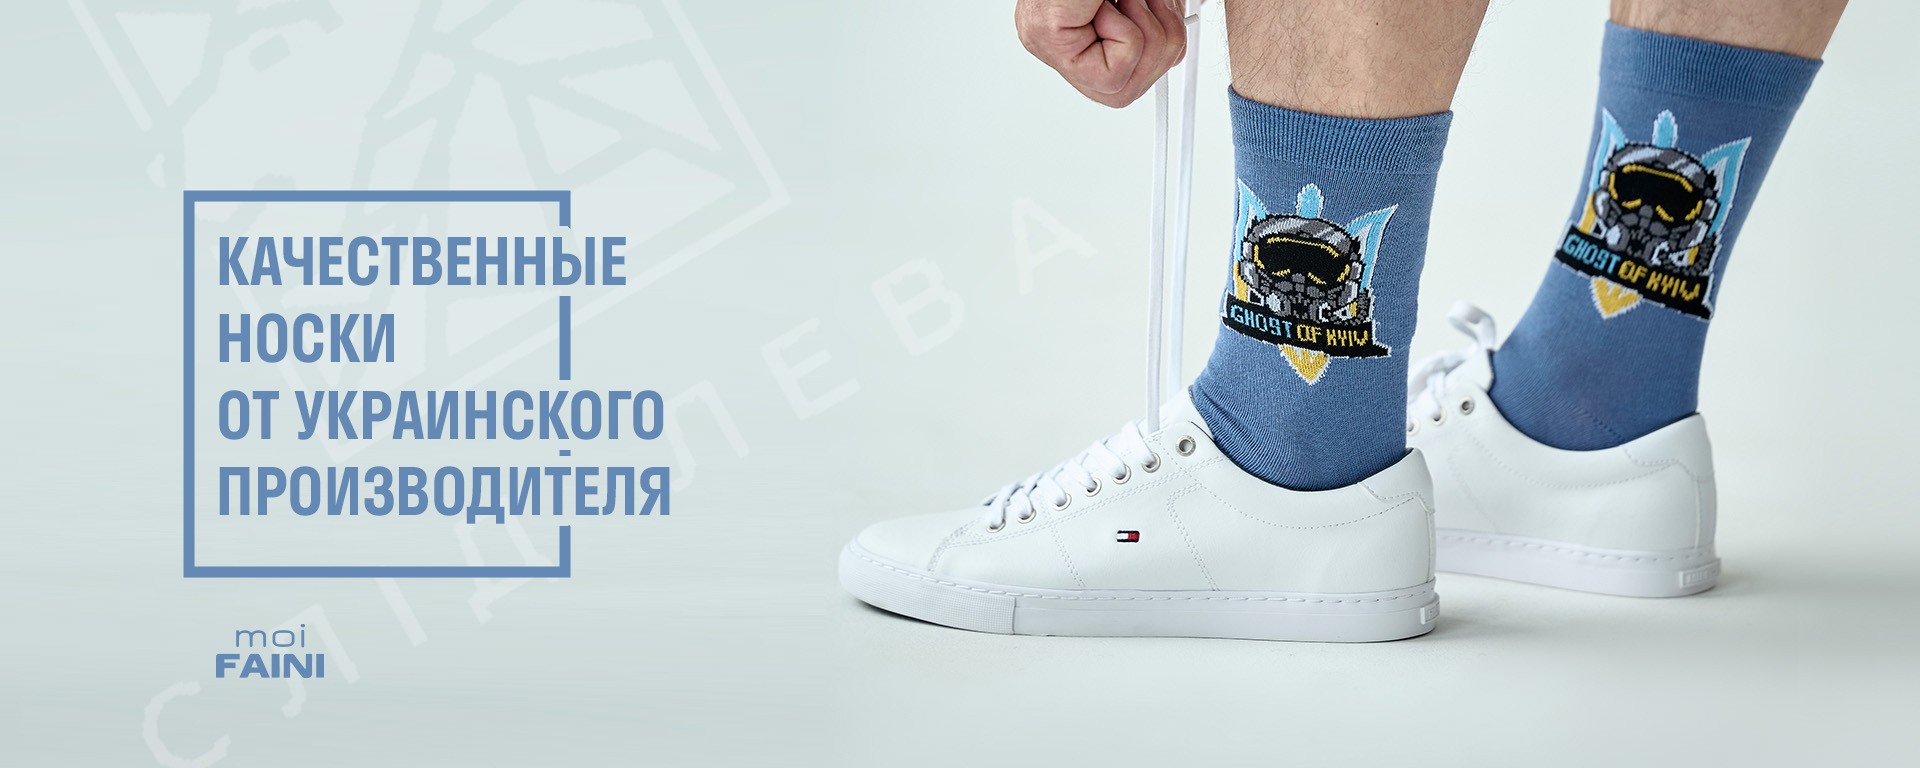 Качественные носки от украинского производителя